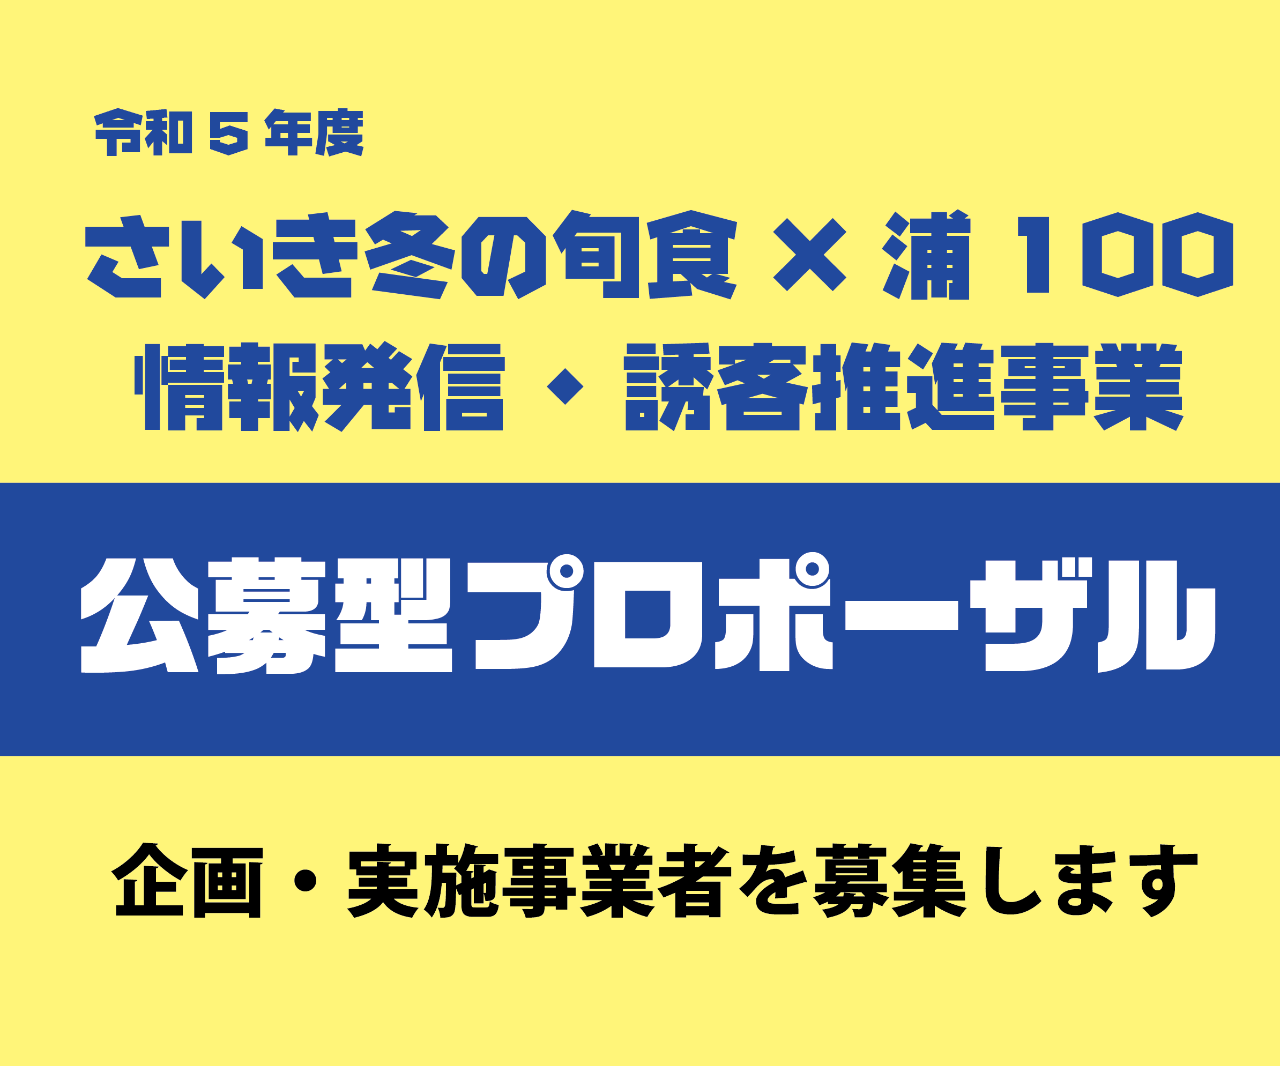 『さいき冬の旬食×浦100キャンペーン』 企画・実施事業者募集